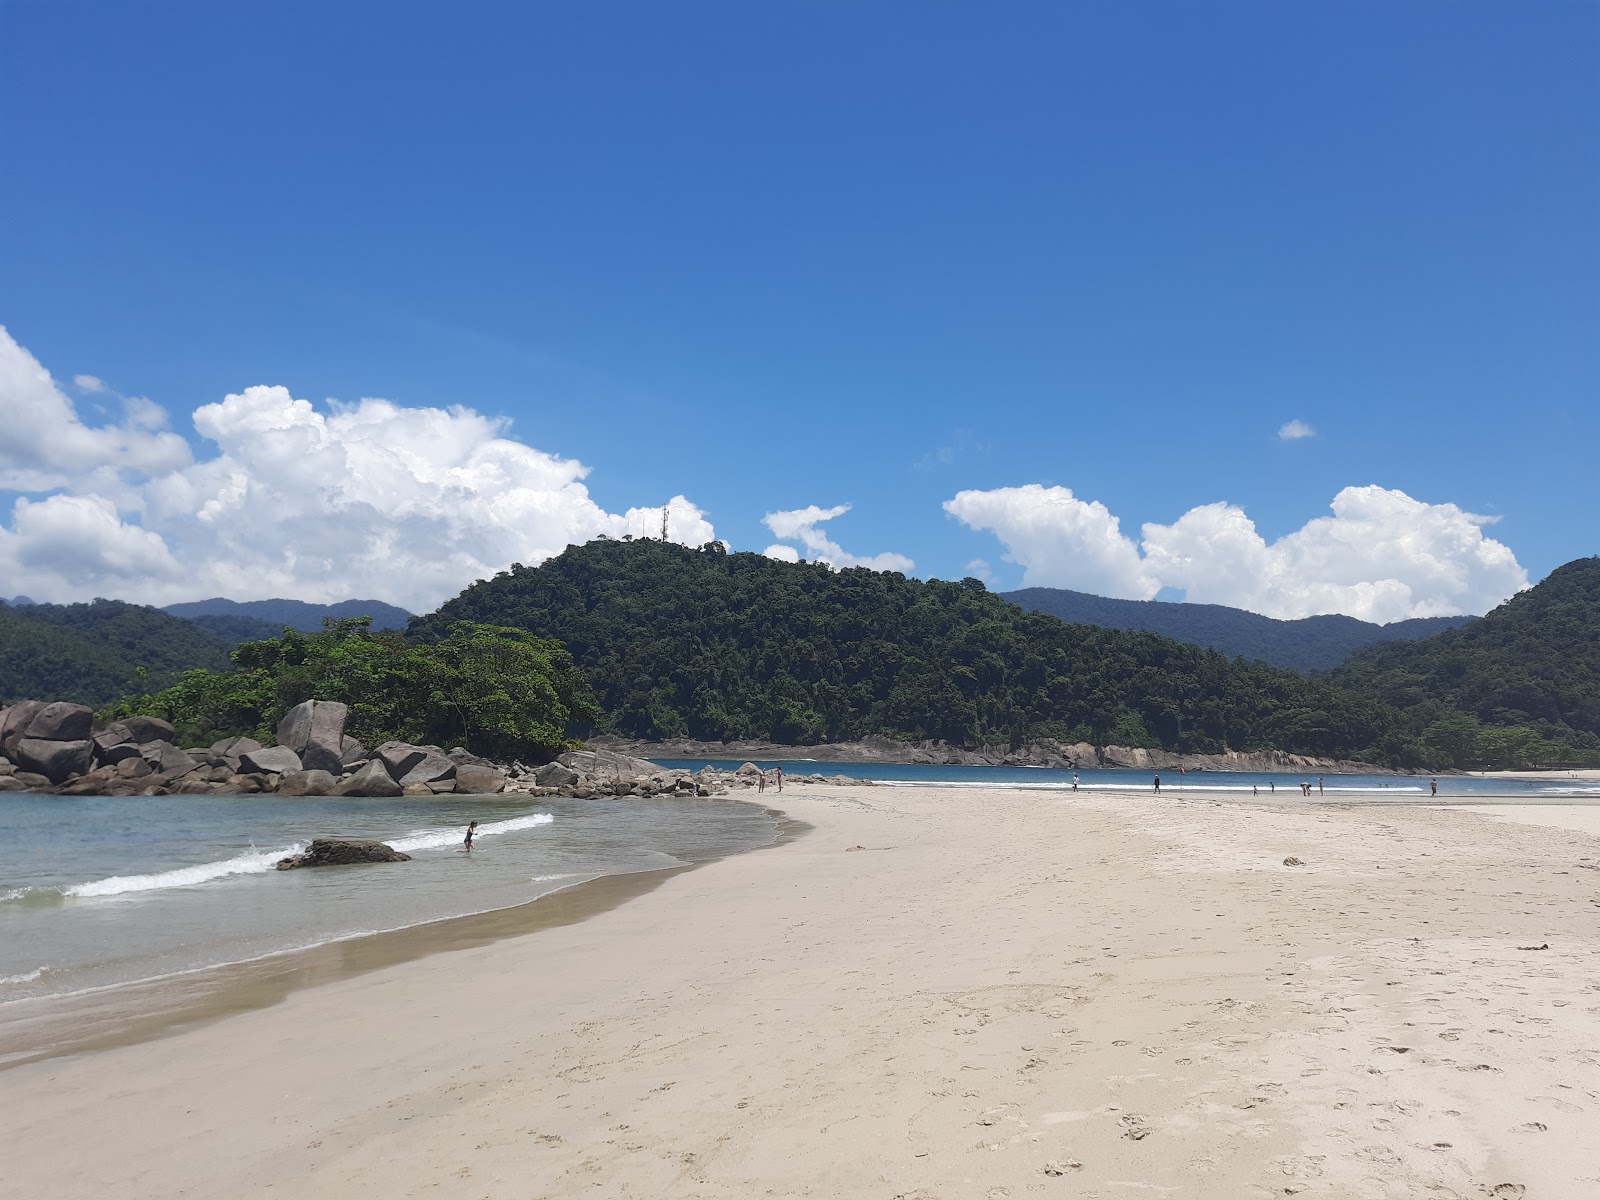 Praia Das Laranjeiras'in fotoğrafı geniş plaj ile birlikte